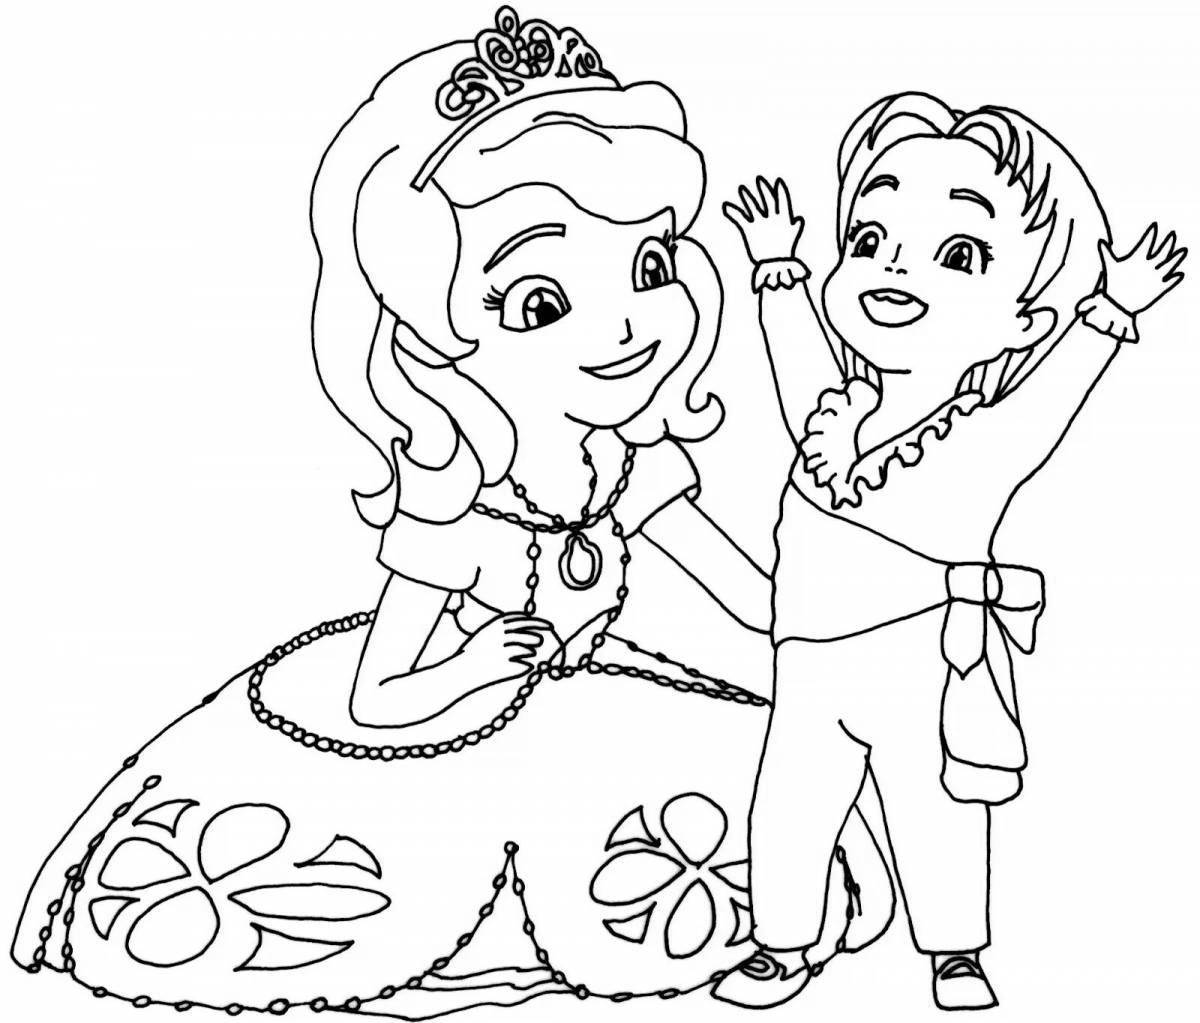 Экзотическая раскраска принцесса софия для детей